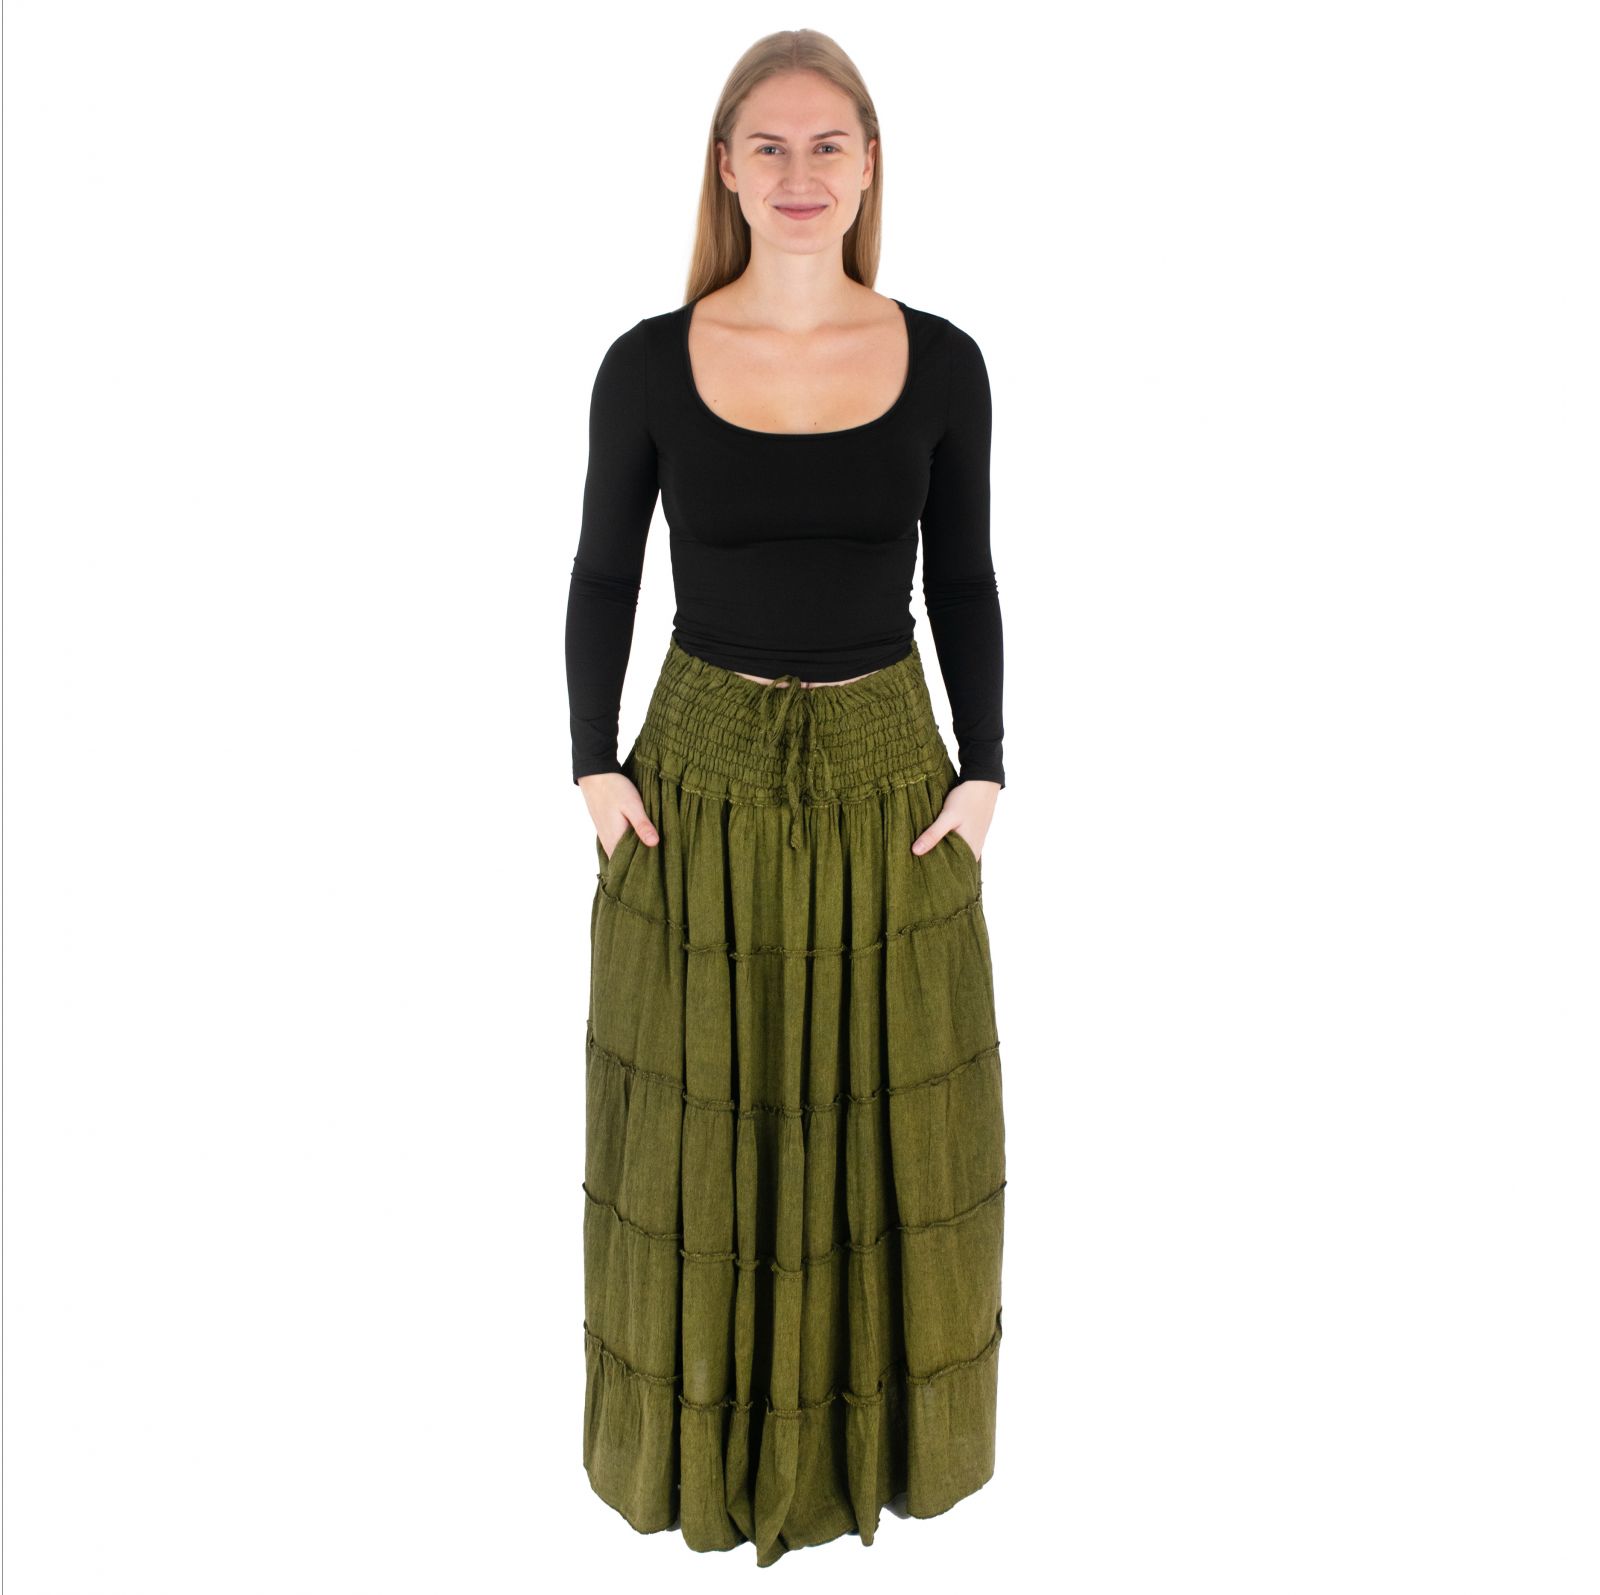 Long ethnic / hippie skirt Bhintuna Khaki Green Nepal